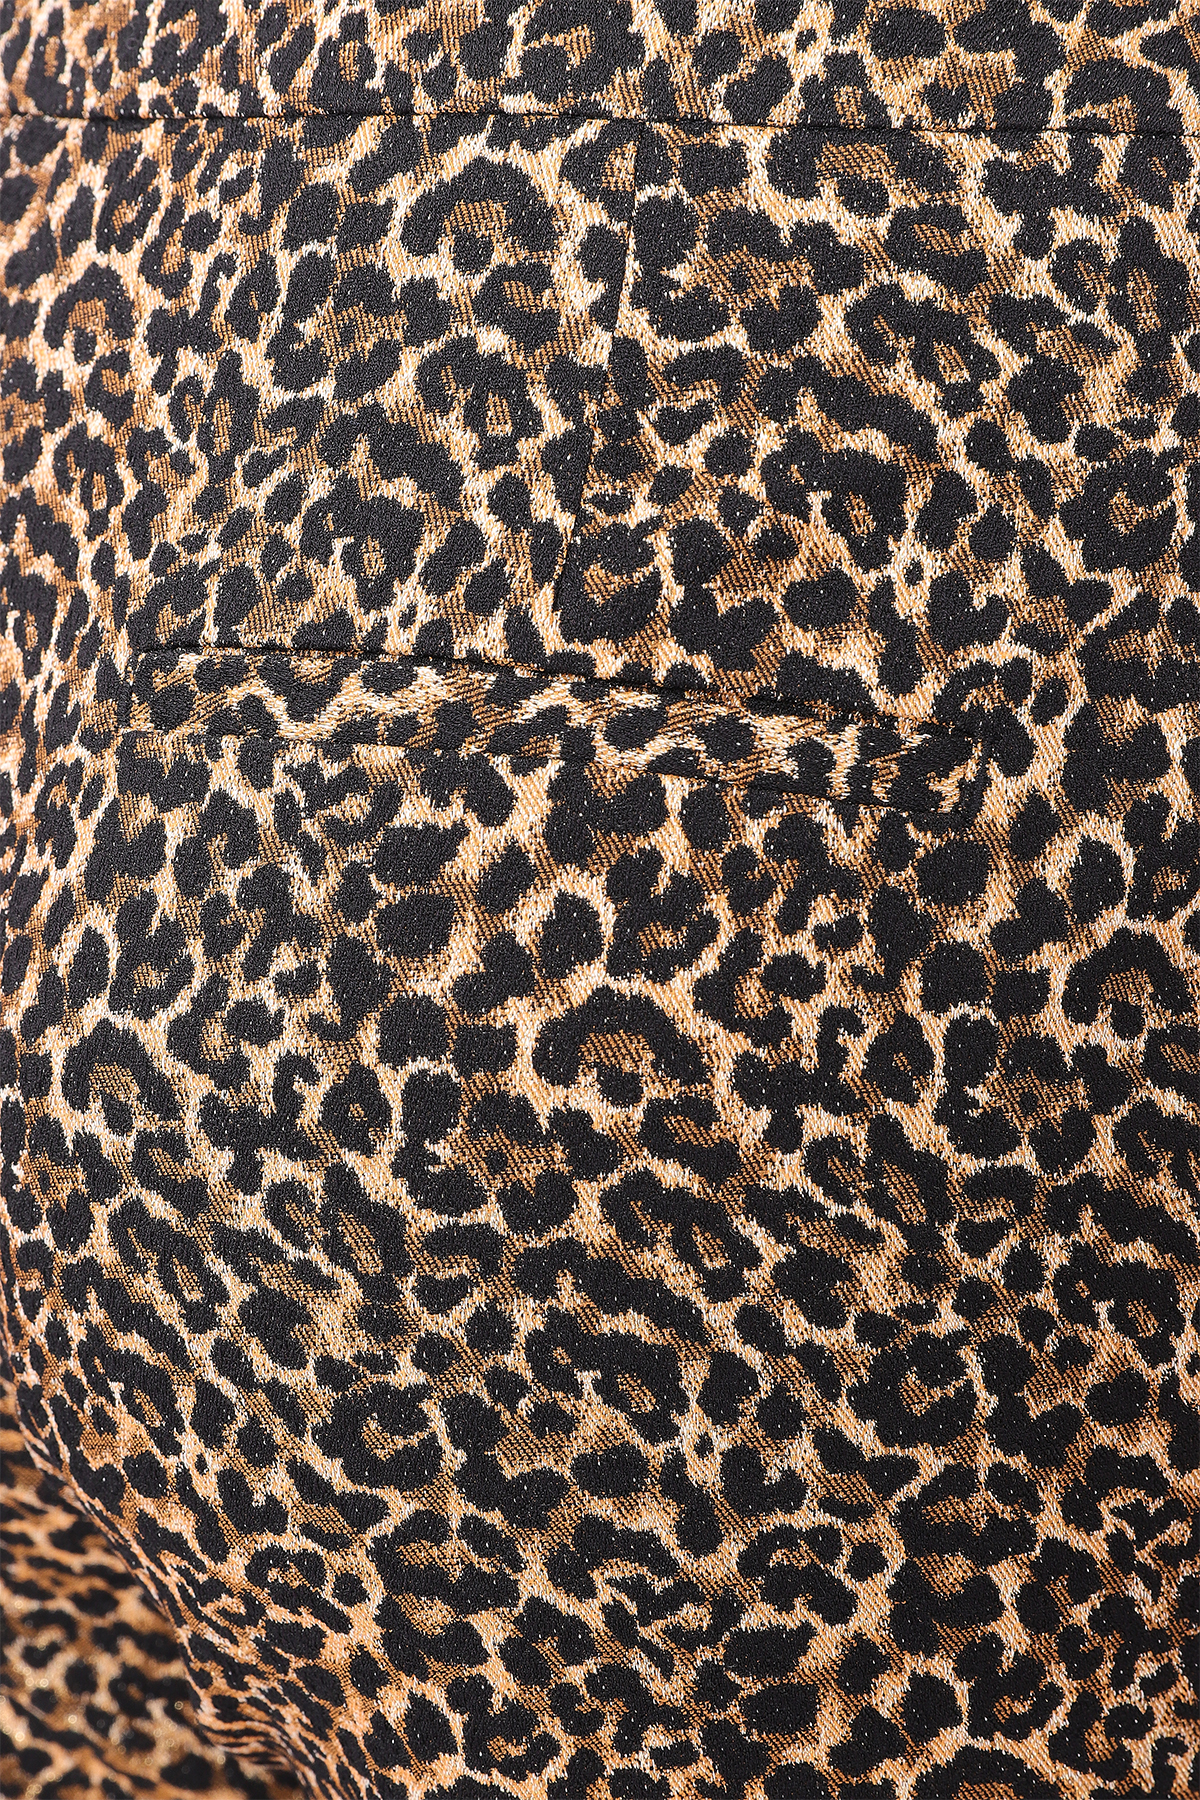 Jacquard-Hose Cardio mit Leopardenmuster | ANTWERP ESSENTIEL